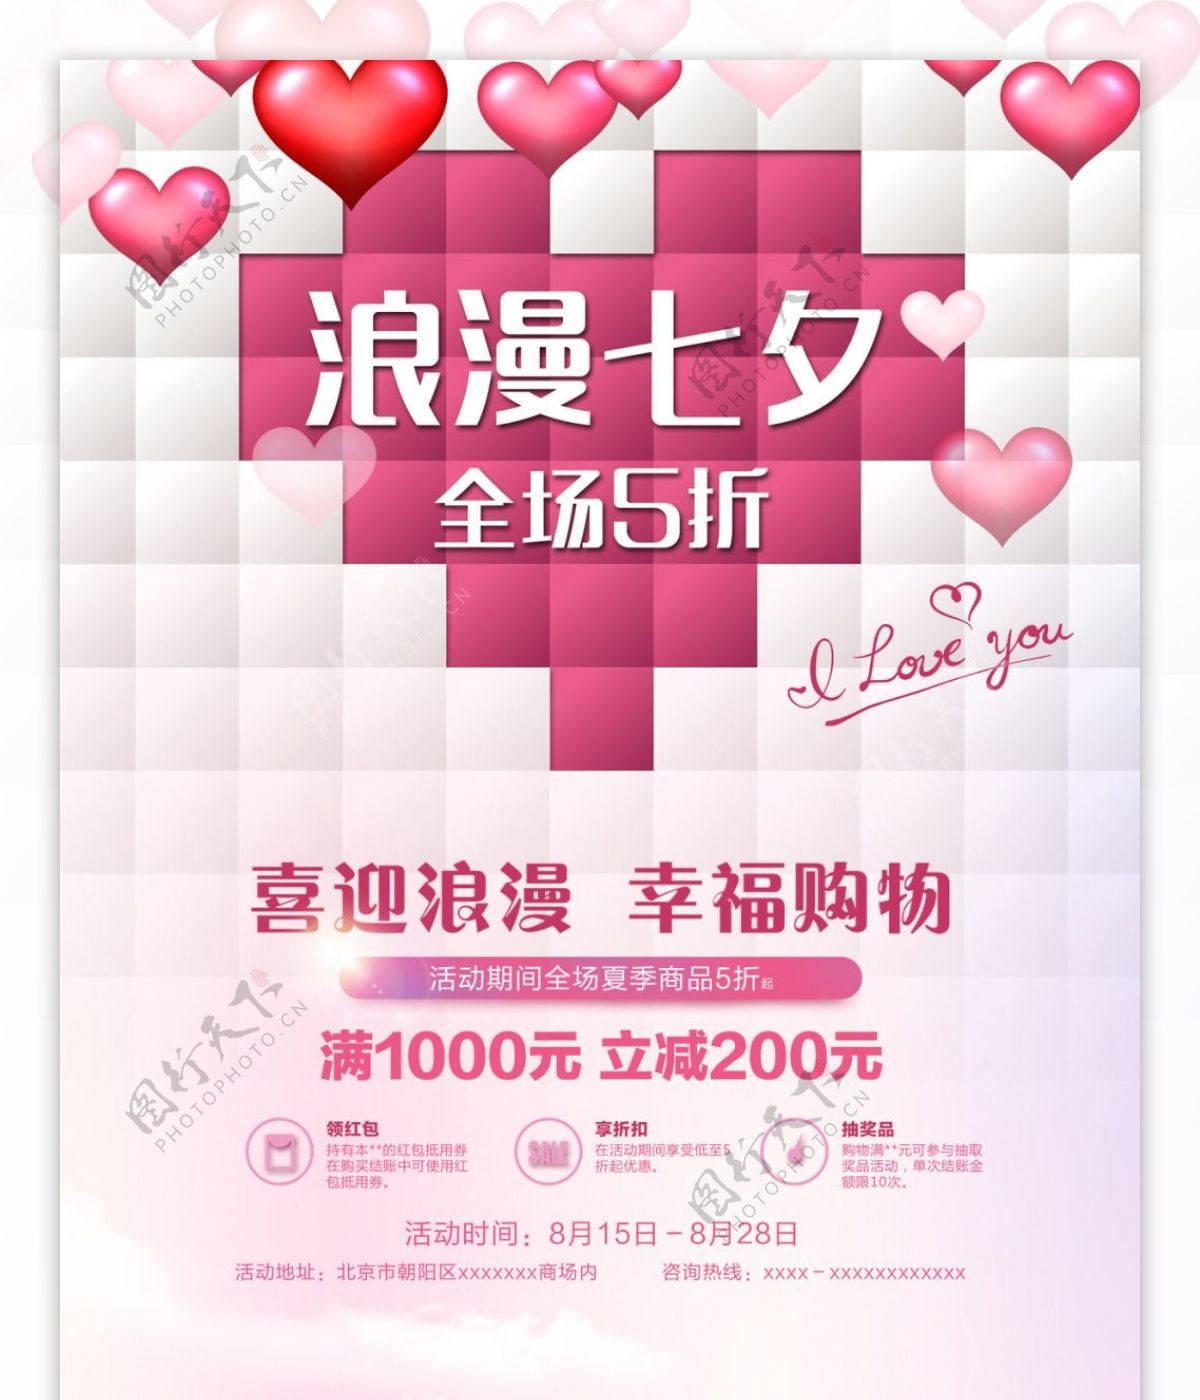 创意爱心七夕促销宣传海报马赛克